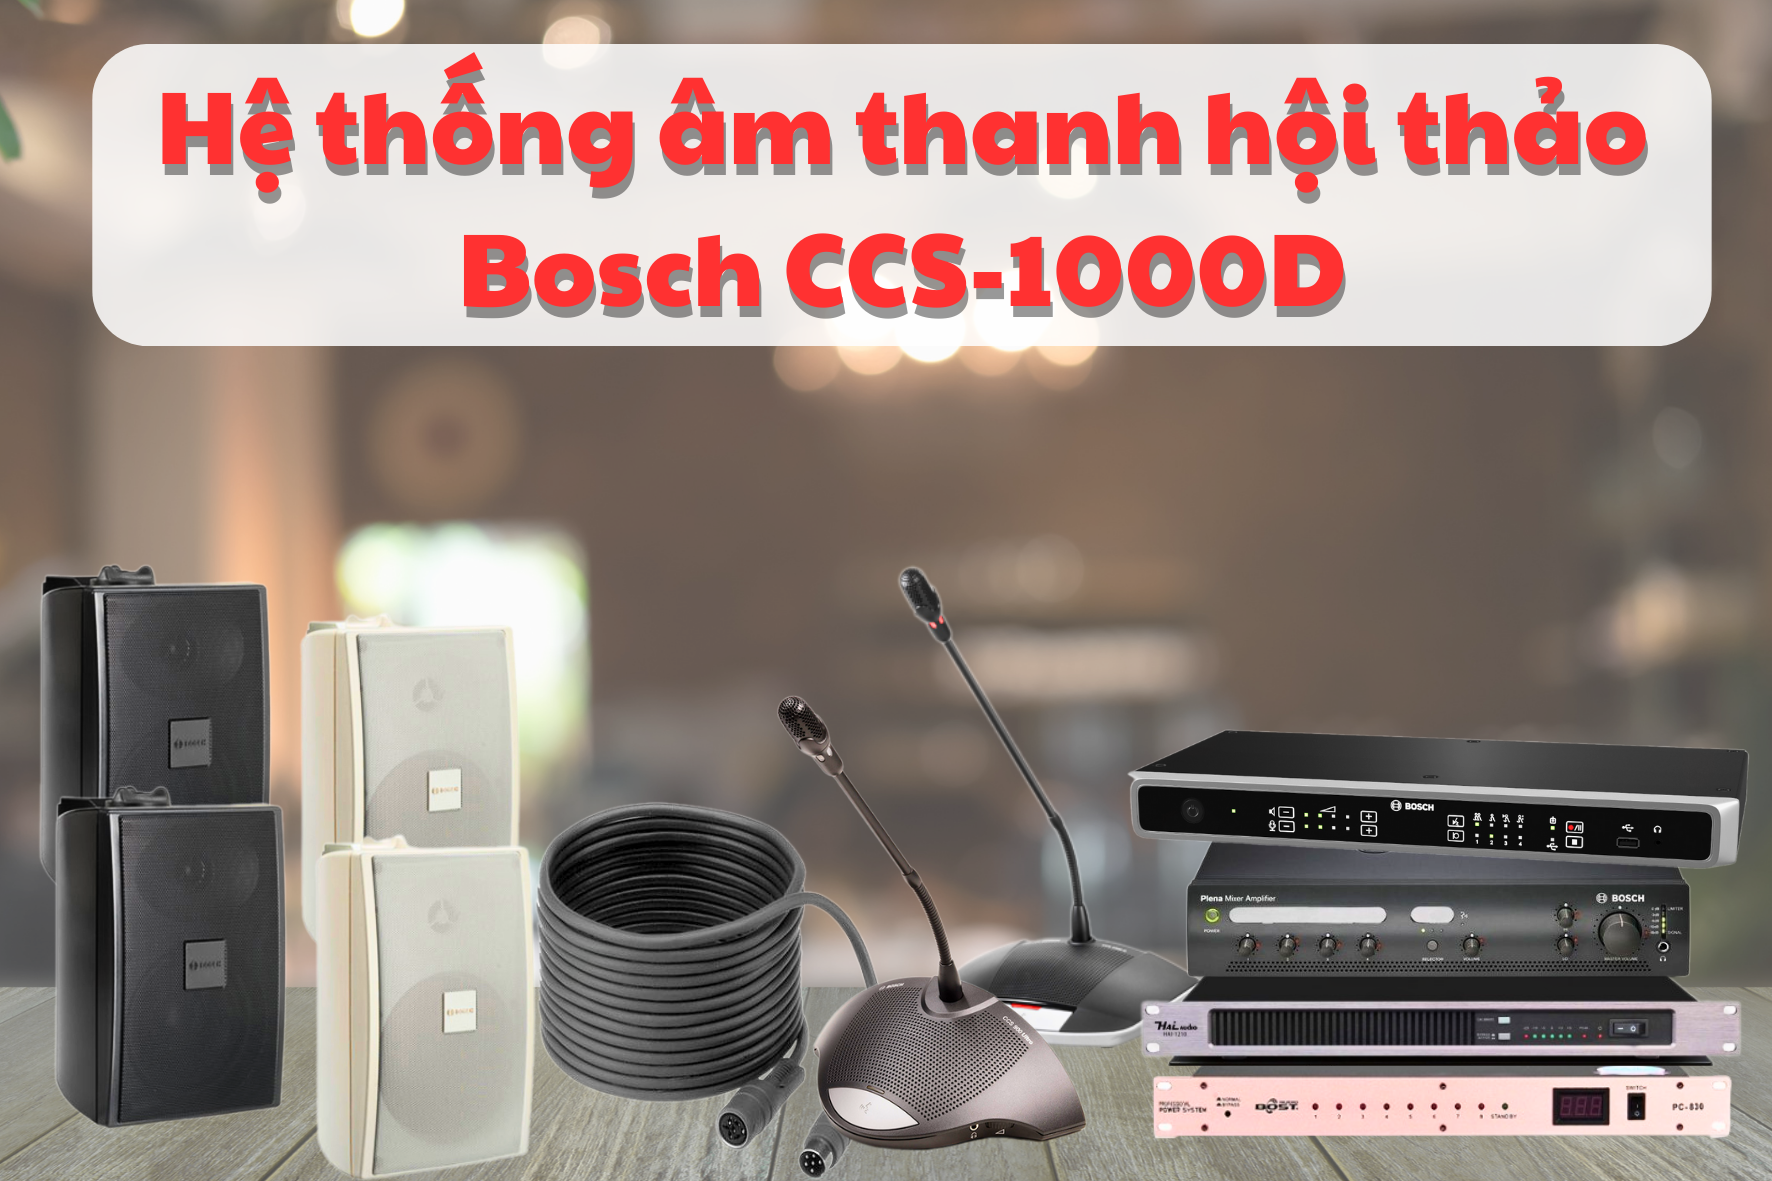 Dàn âm thanh hội thảo hãng Bosch CCS-1000D 